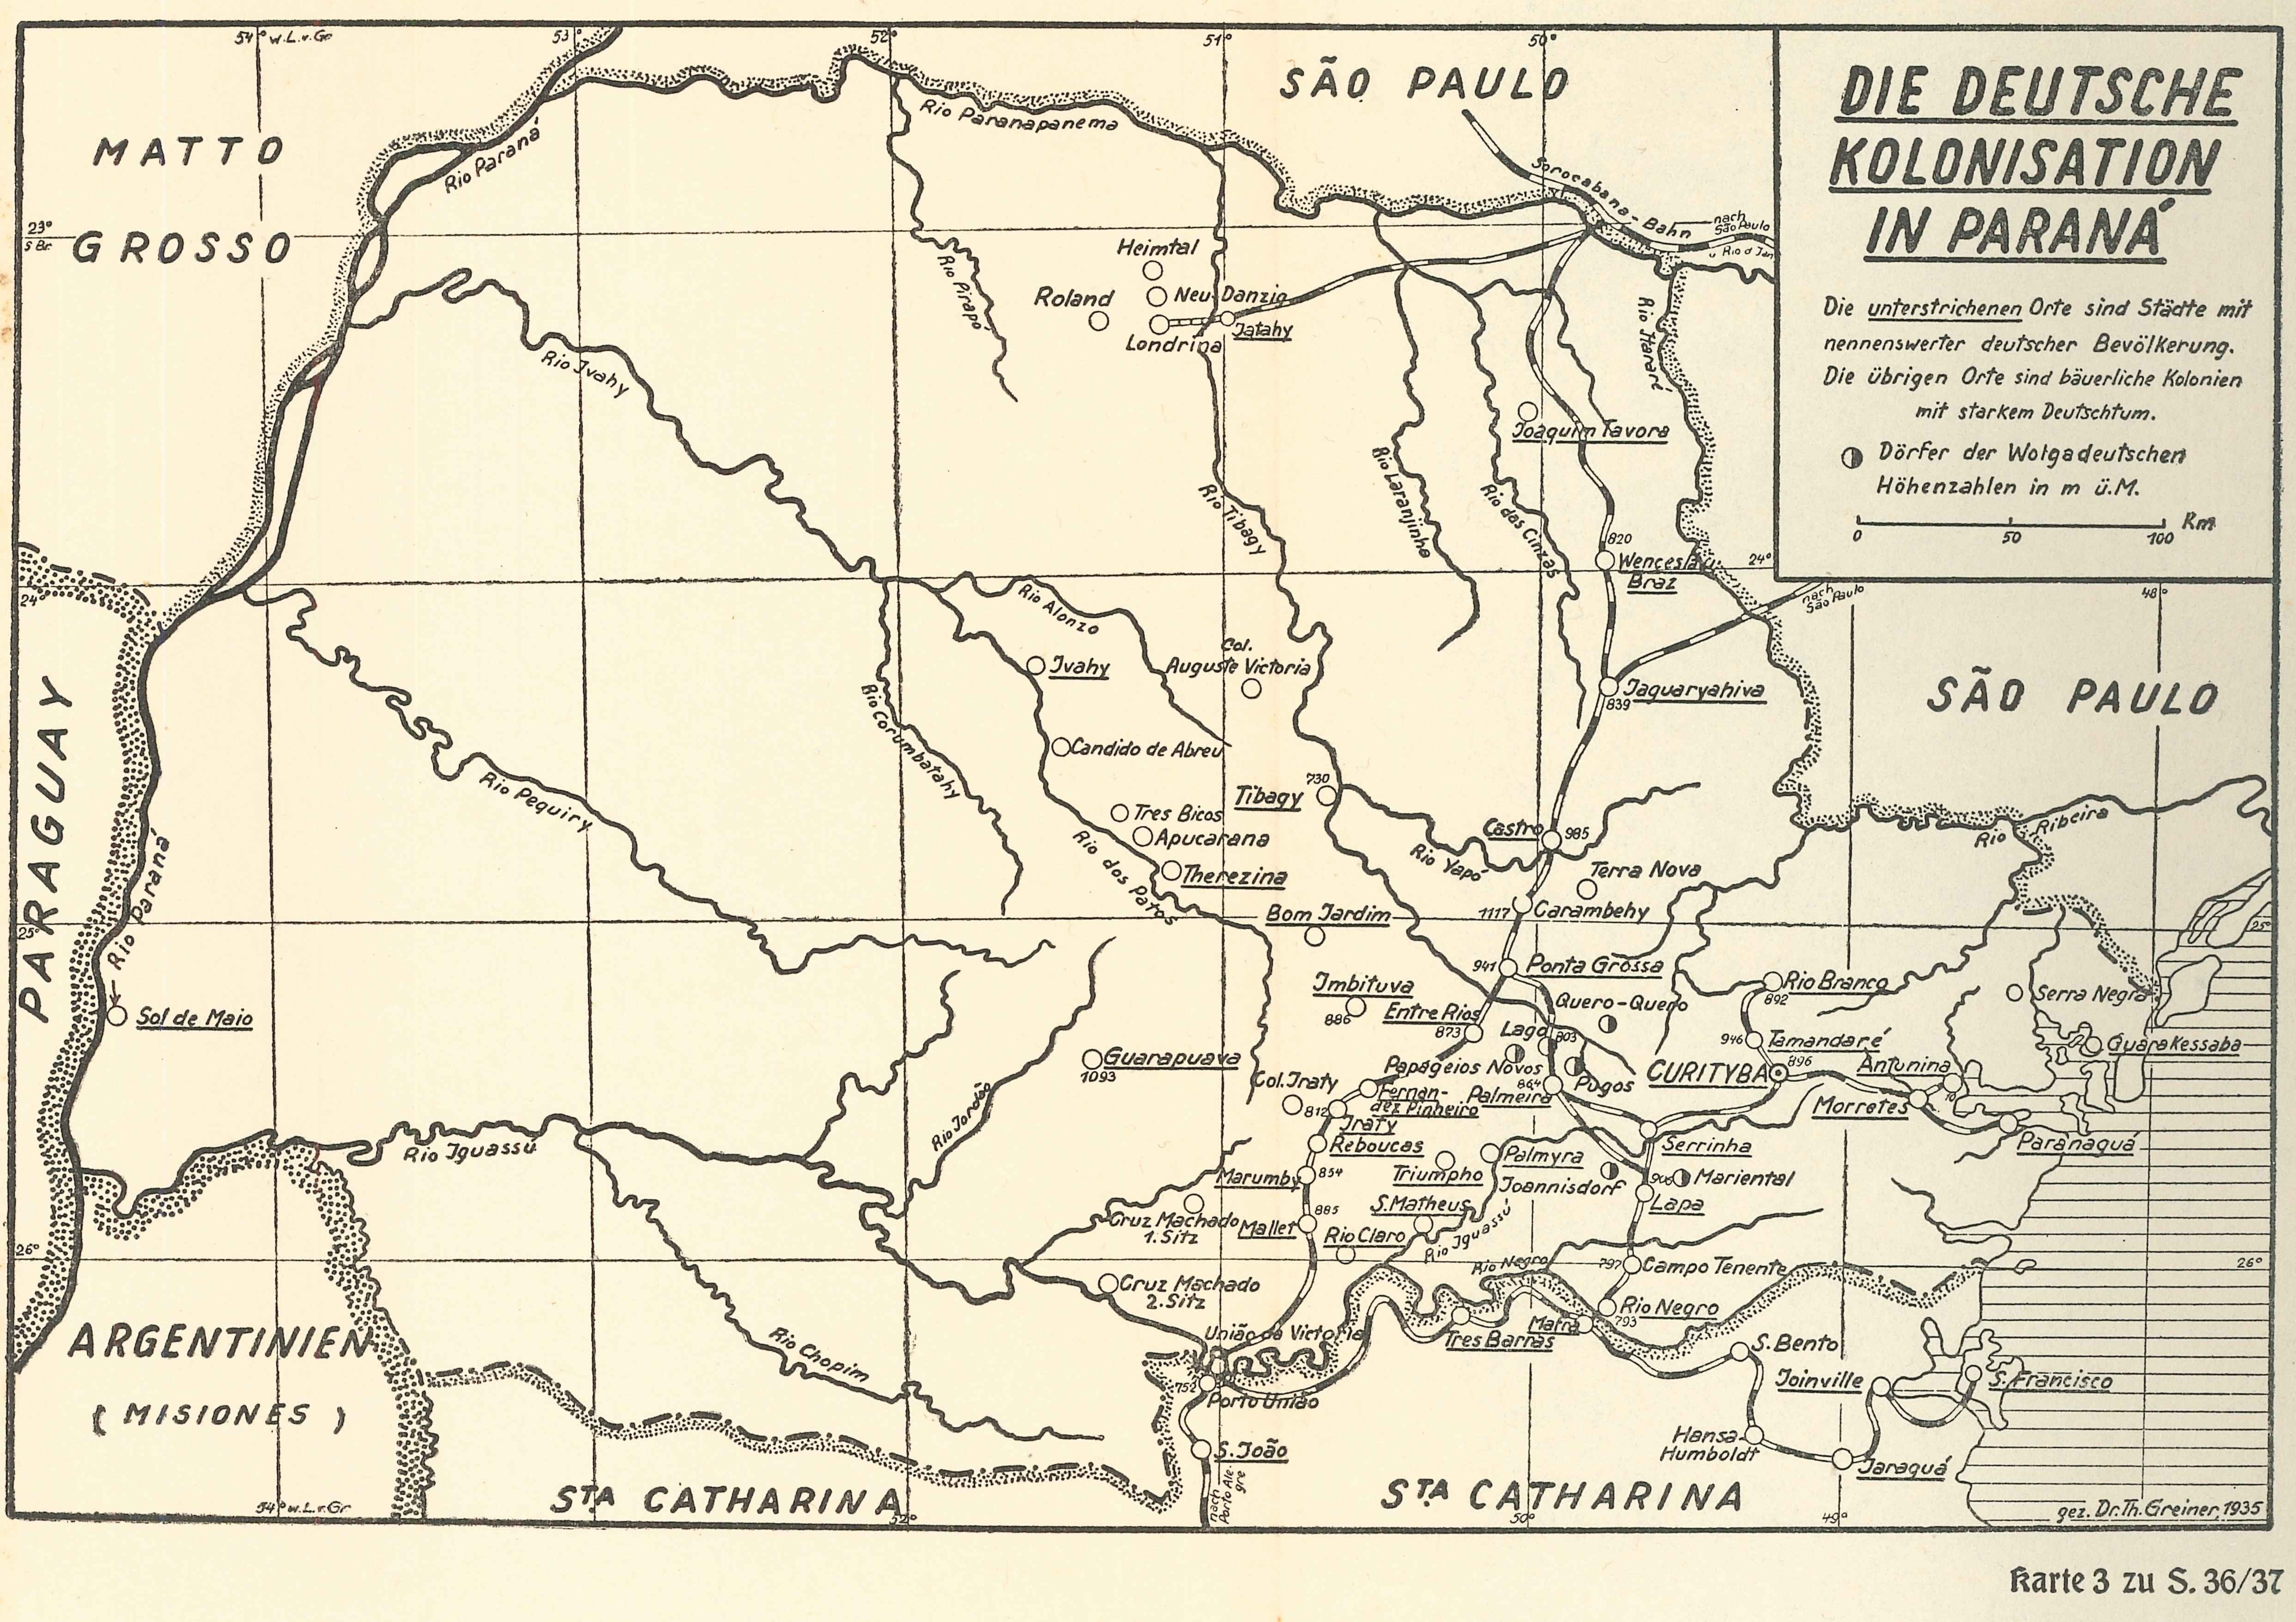 Map of the German Colonies in Paraná (1935). Source: Im Kamp und Urwald Südbrasiliens (1936).